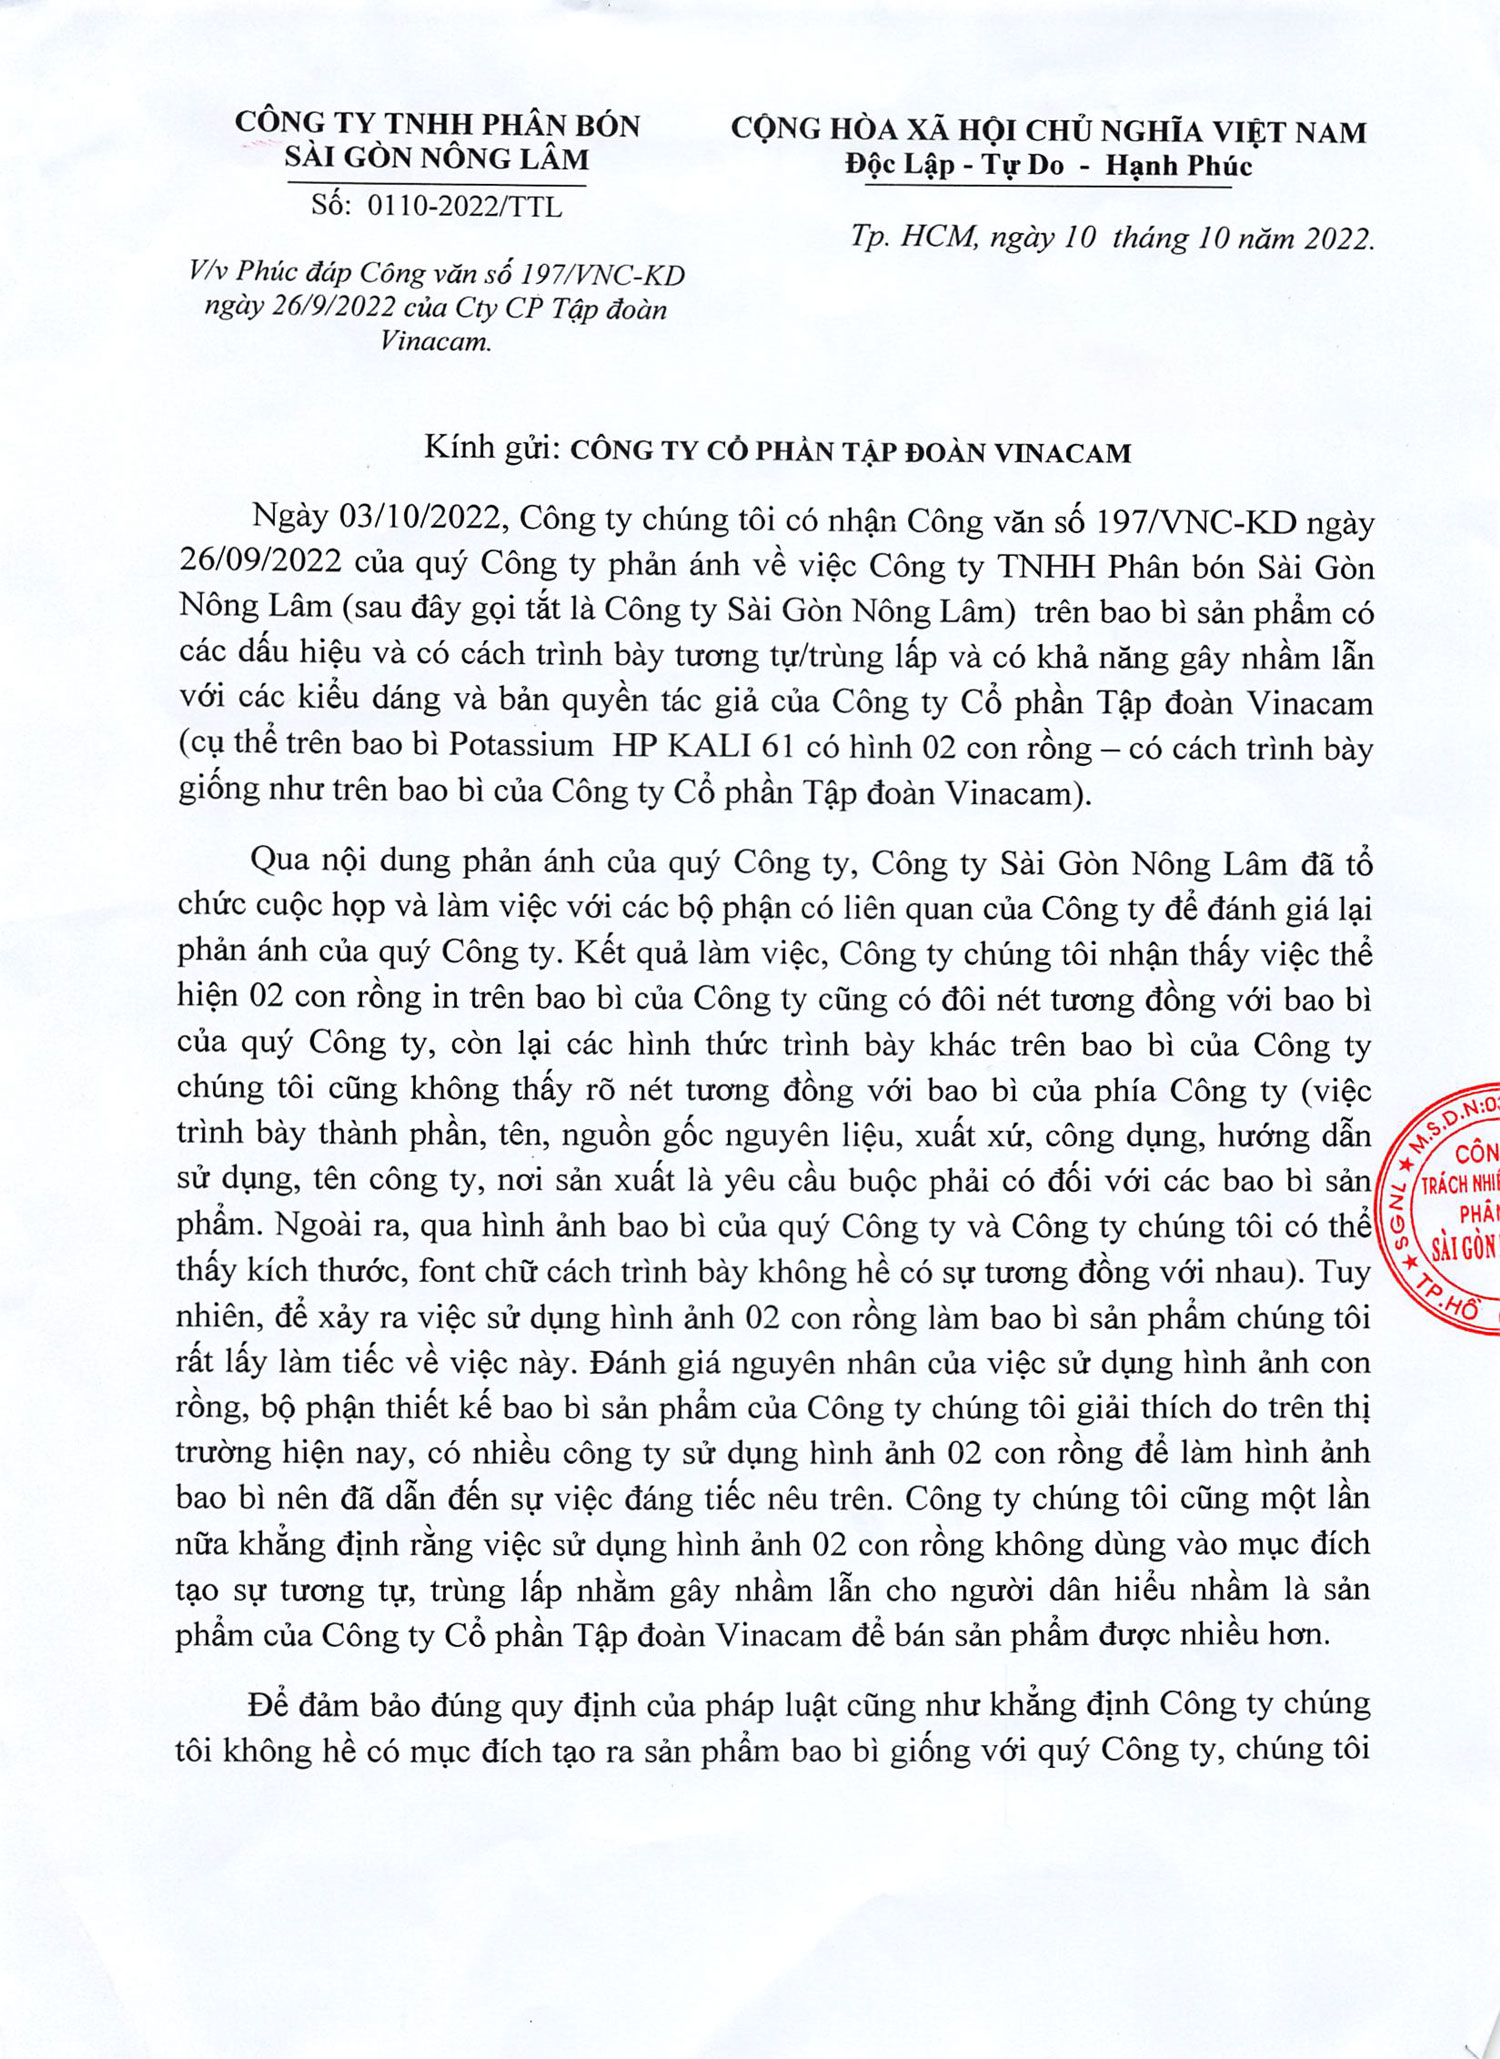 Công văn phúc đáp về các sản phẩm phân bón Kali của Công ty Phân bón Sài Gòn Nông Lâm